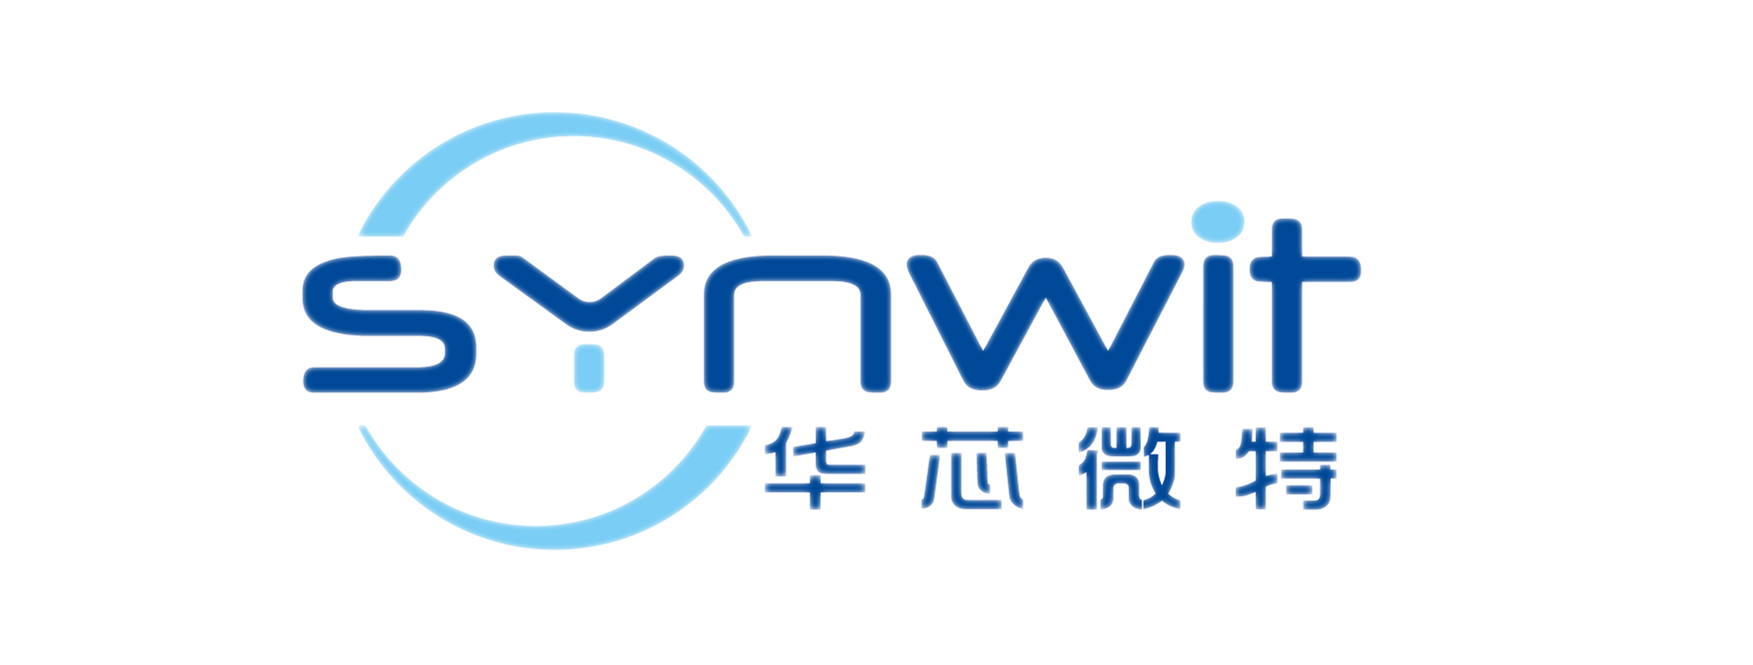 华芯微特-Cortex-M0\/M4 32位微处理器 - 中国电